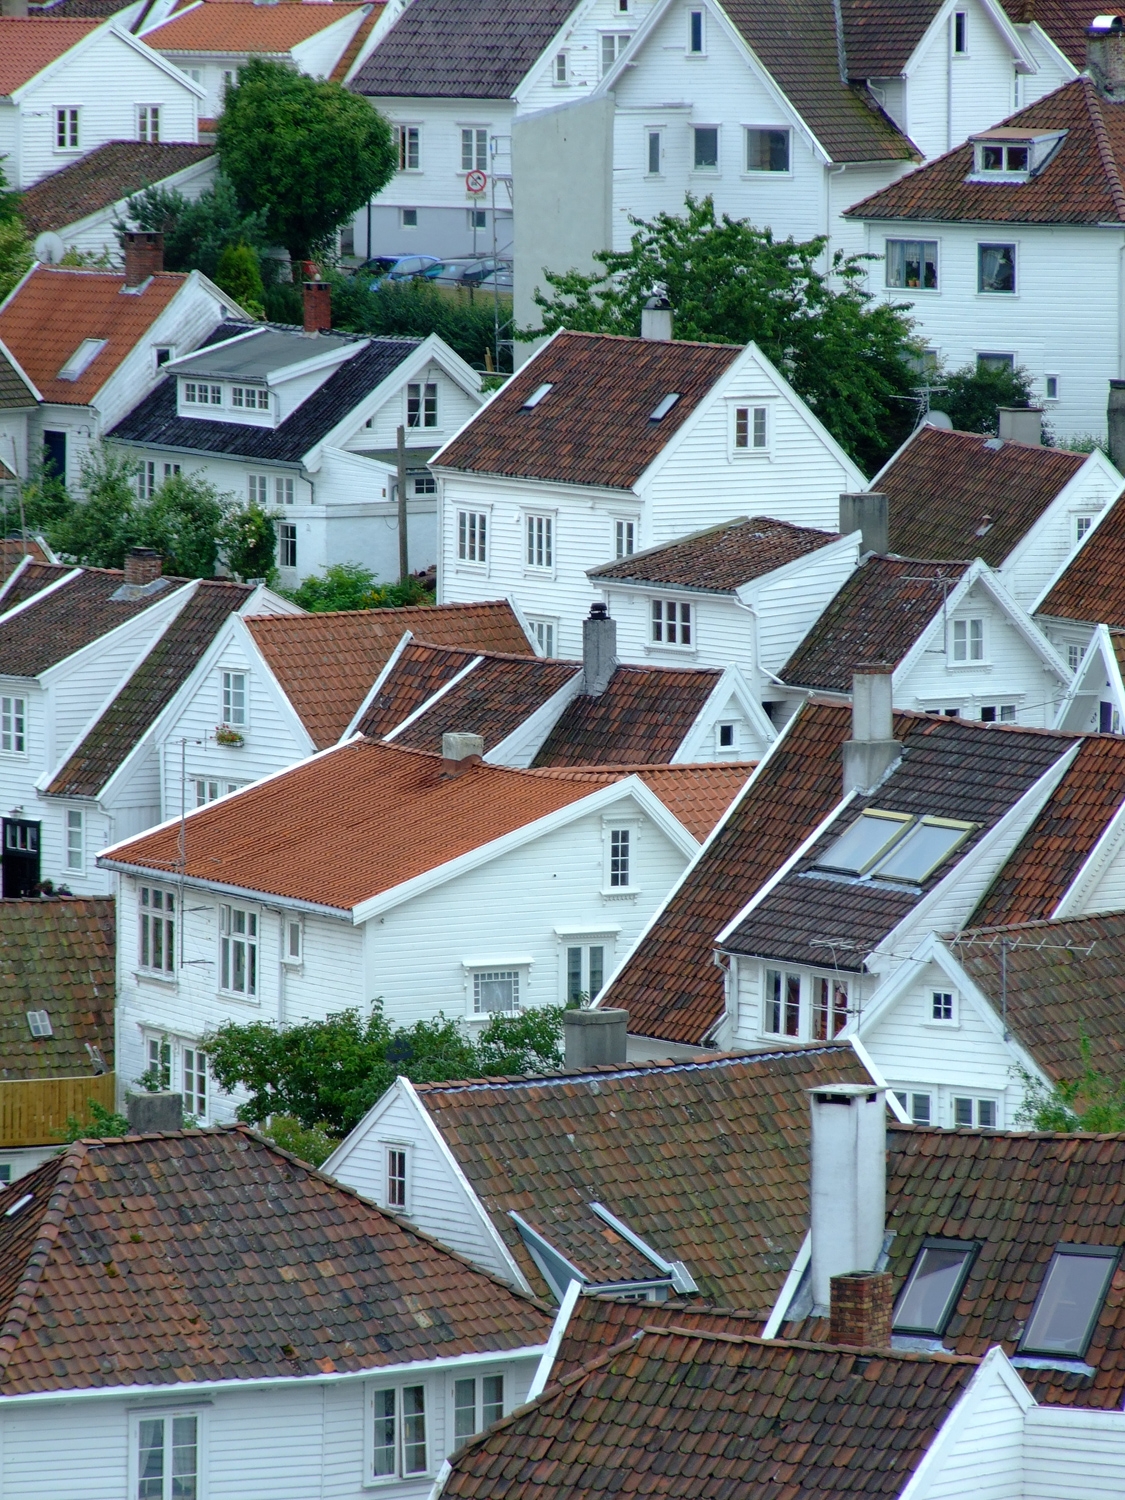 Norwegian Houses Of Stavanger